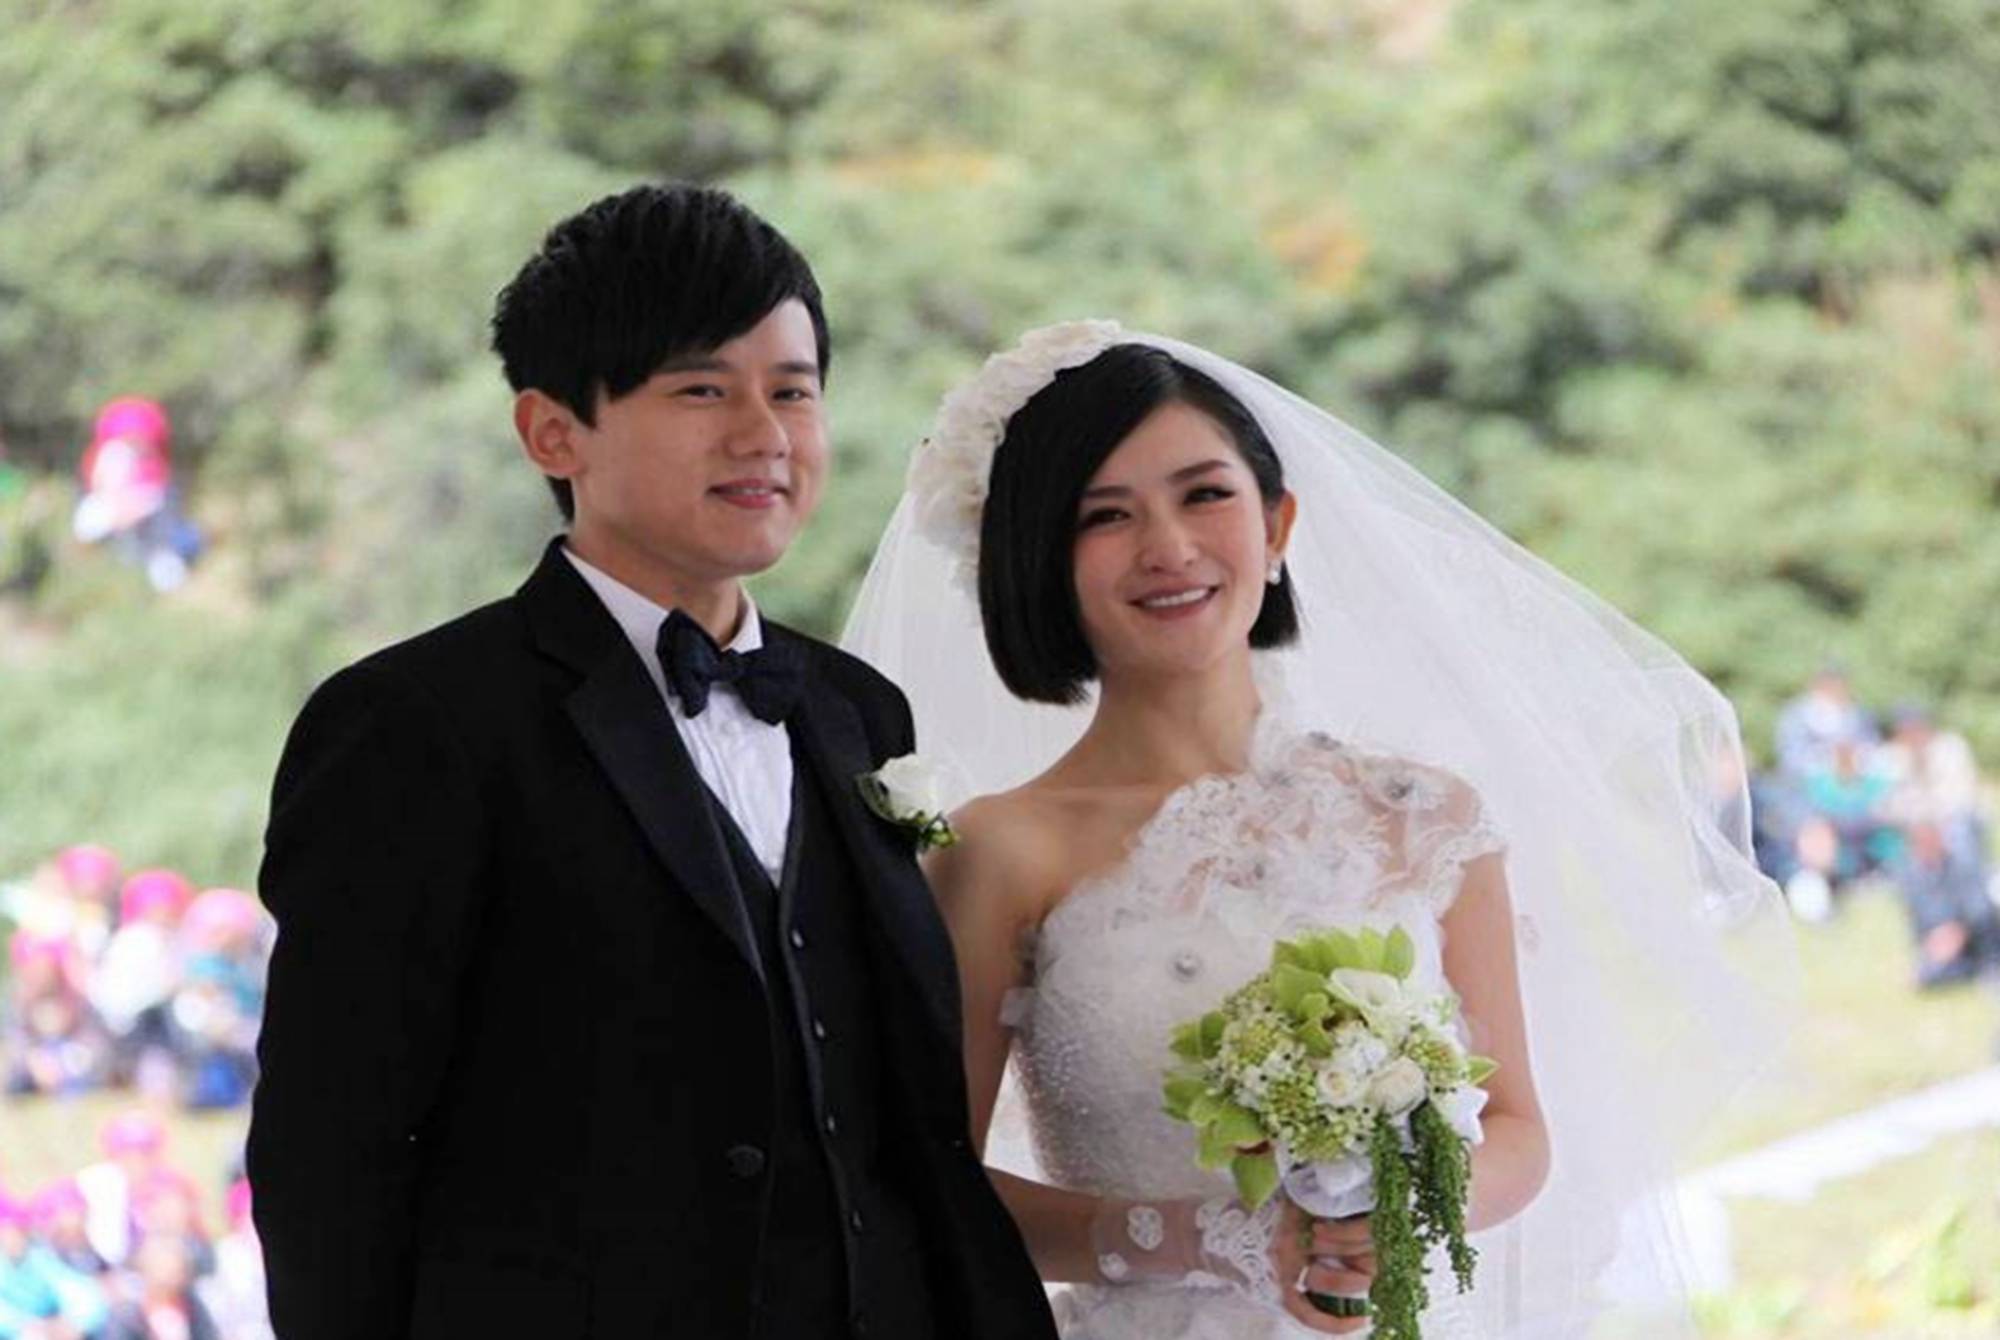 谢娜张杰结婚9周年晒合照,双胞胎太吸睛:为啥不穿一样的衣服?